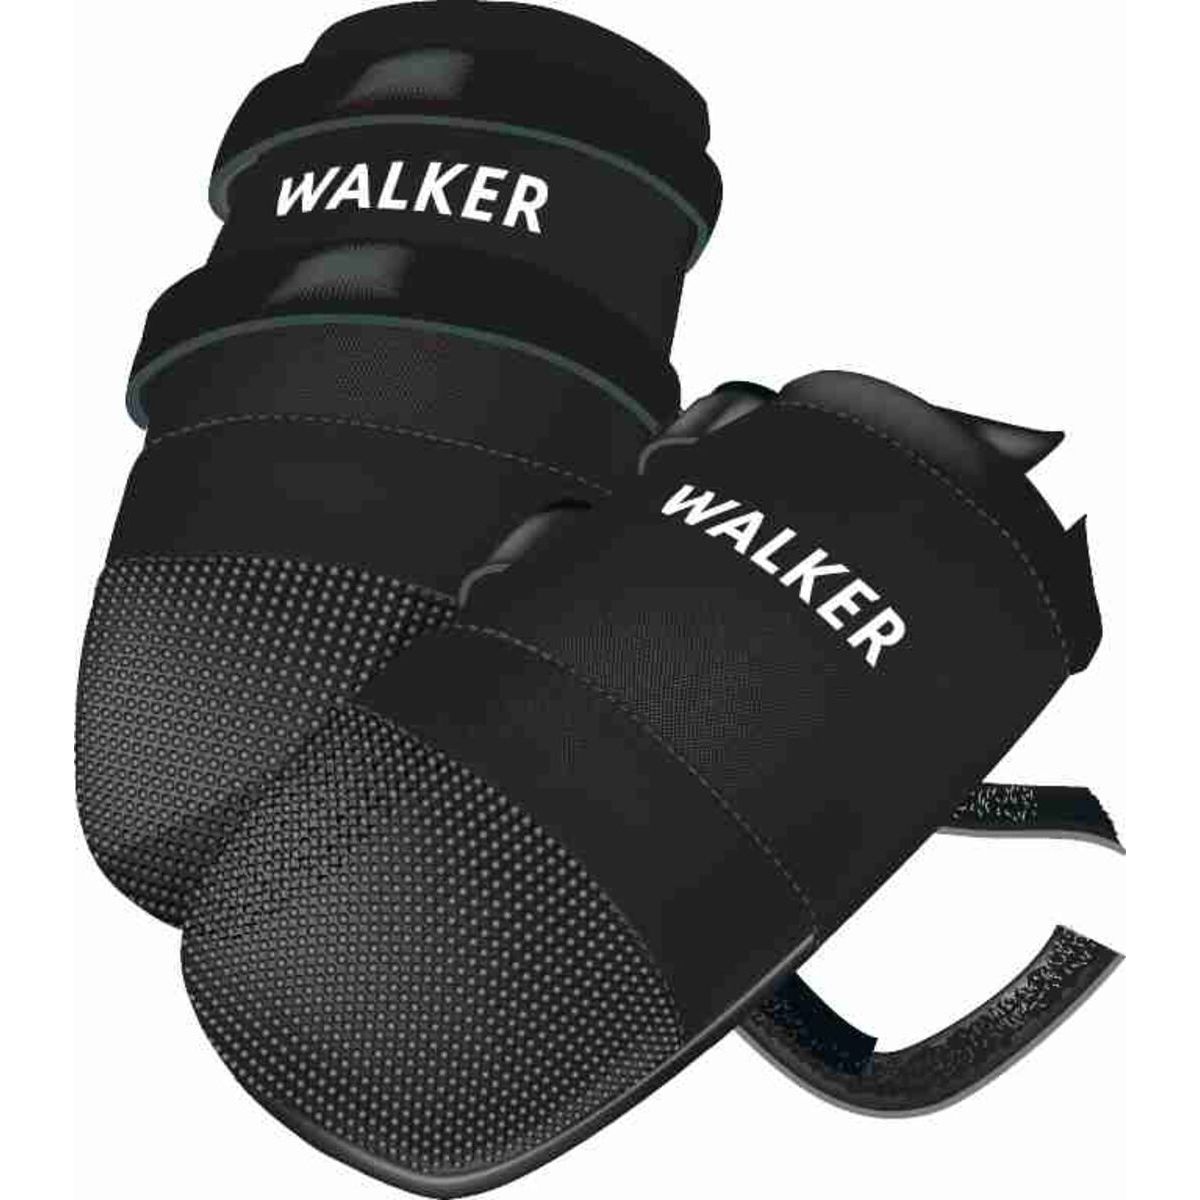 Ботинки для собак Trixie Walker Care полиэстер, XL, 2 шт., черные - фото 2